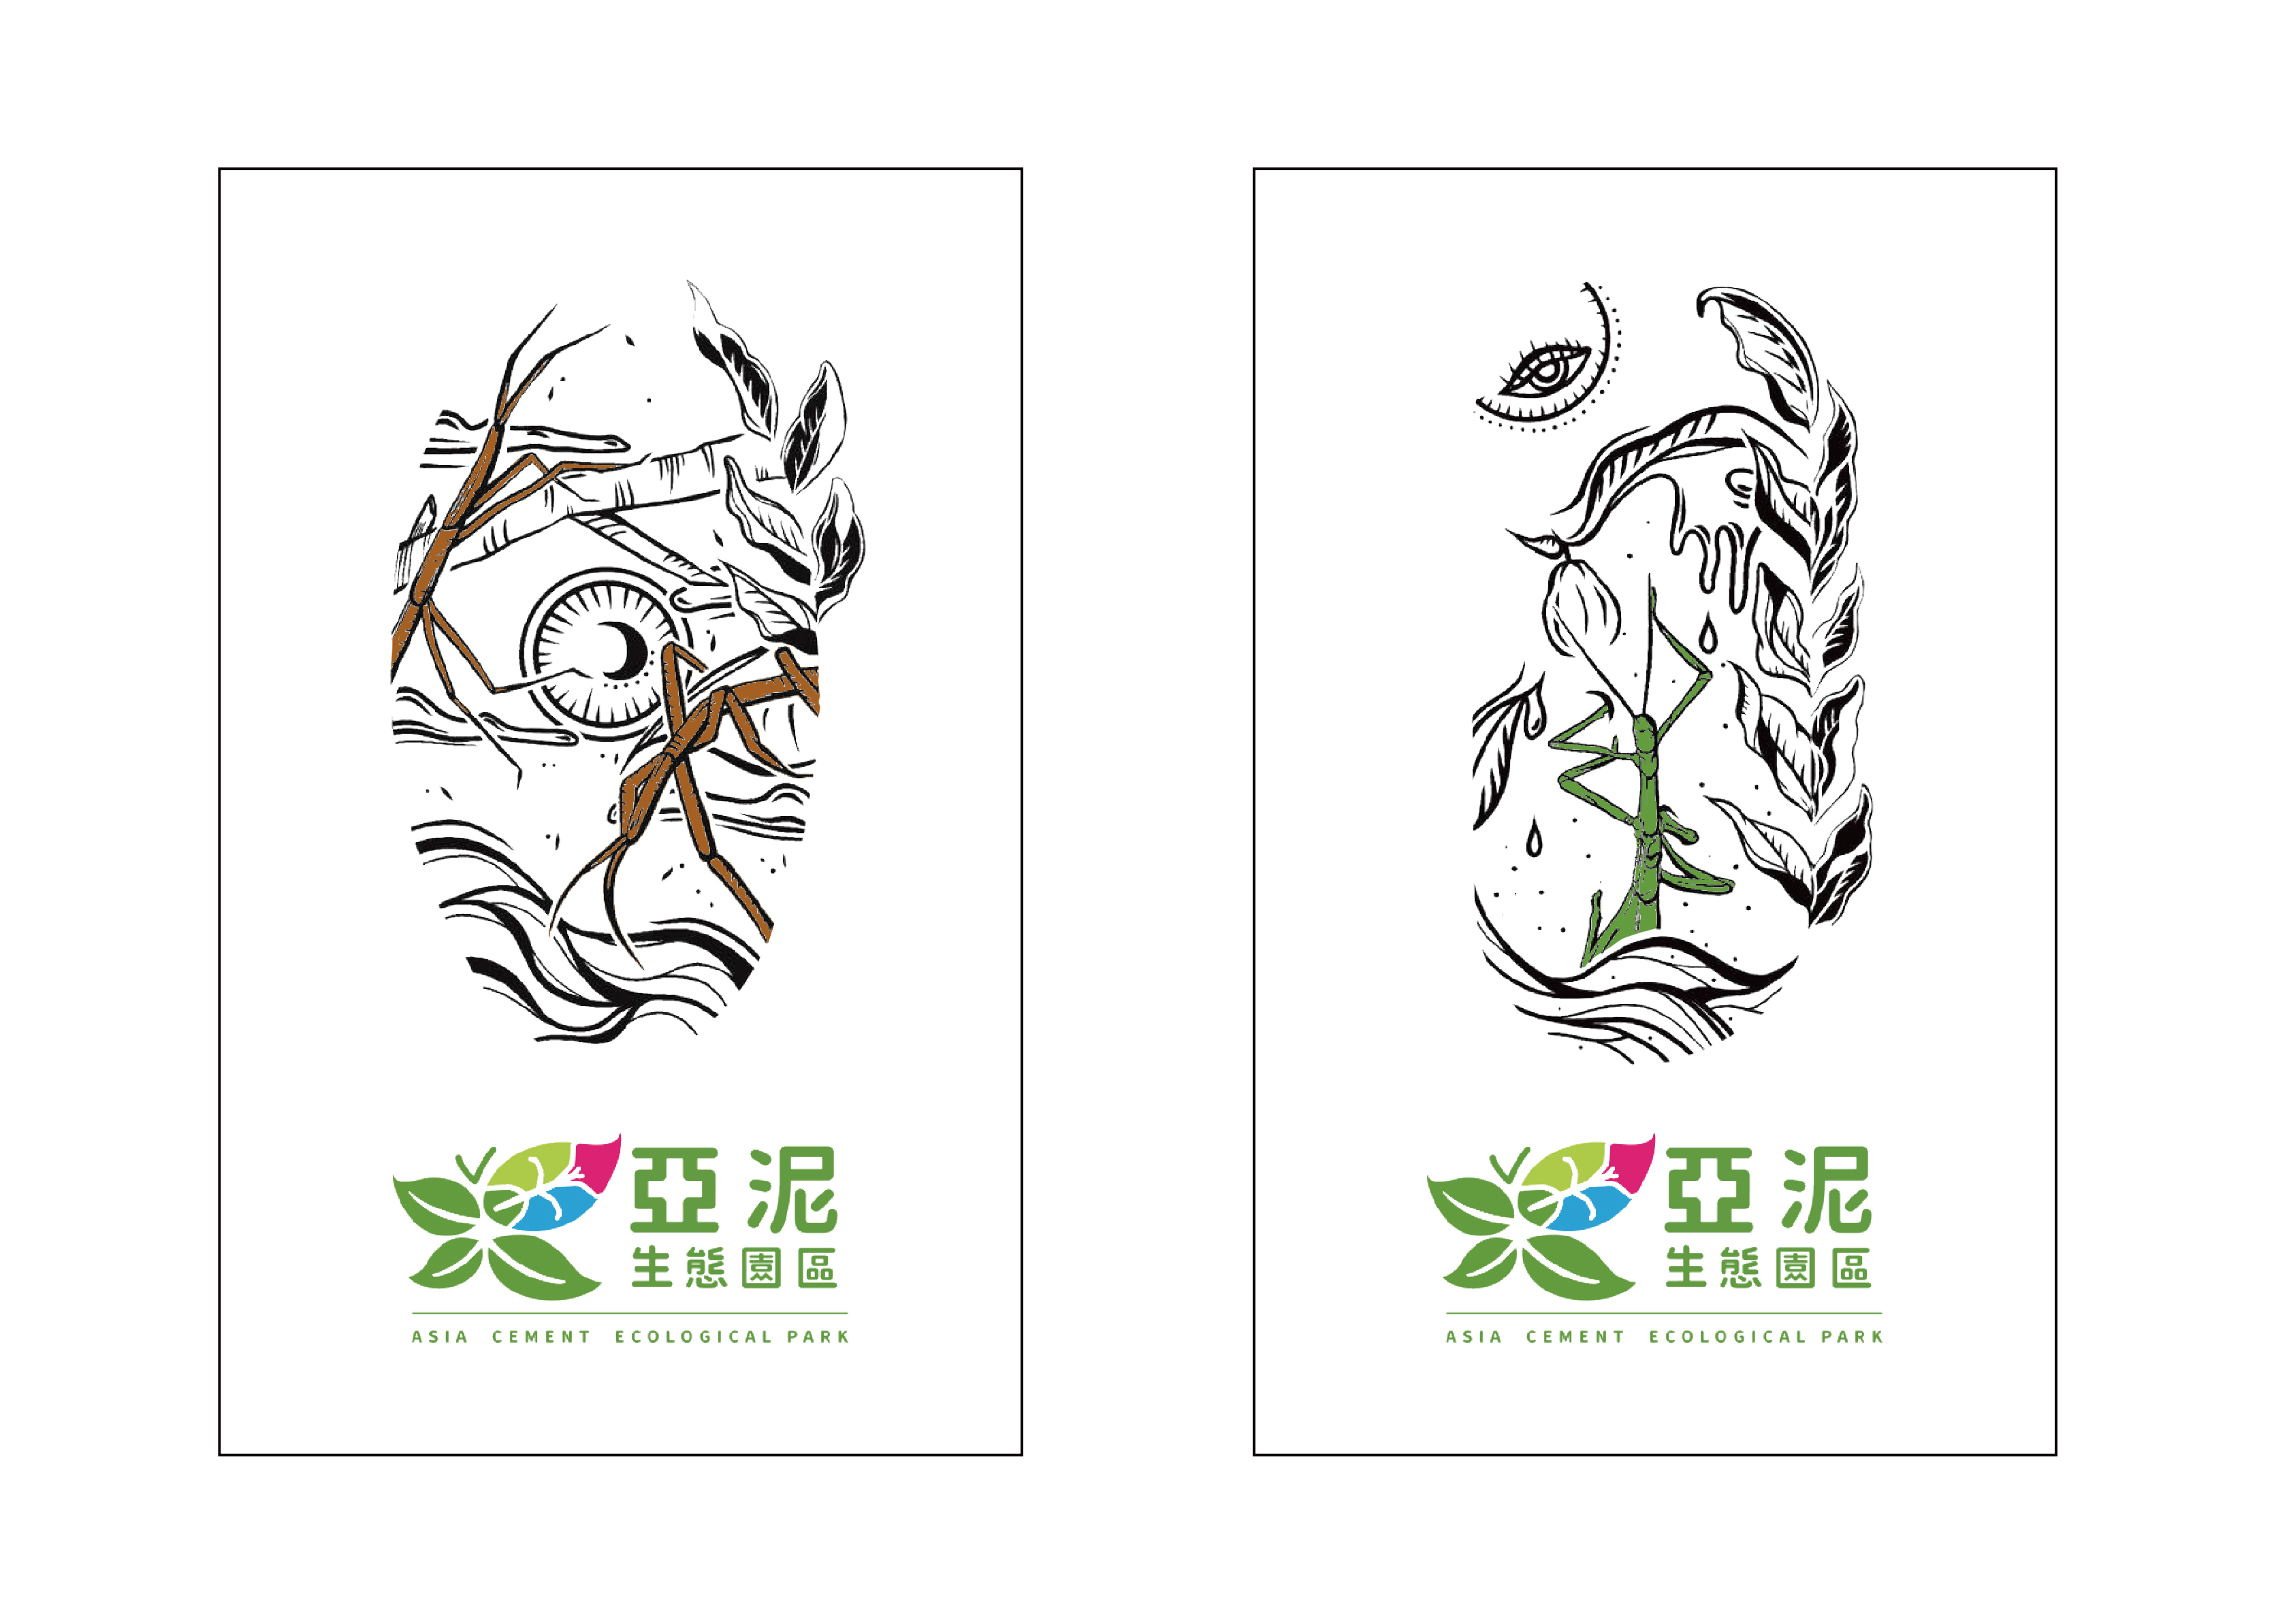 亞泥自有生態環境之版印用視覺圖像設計-設計師：方玠文、劉育君(另開新視窗)